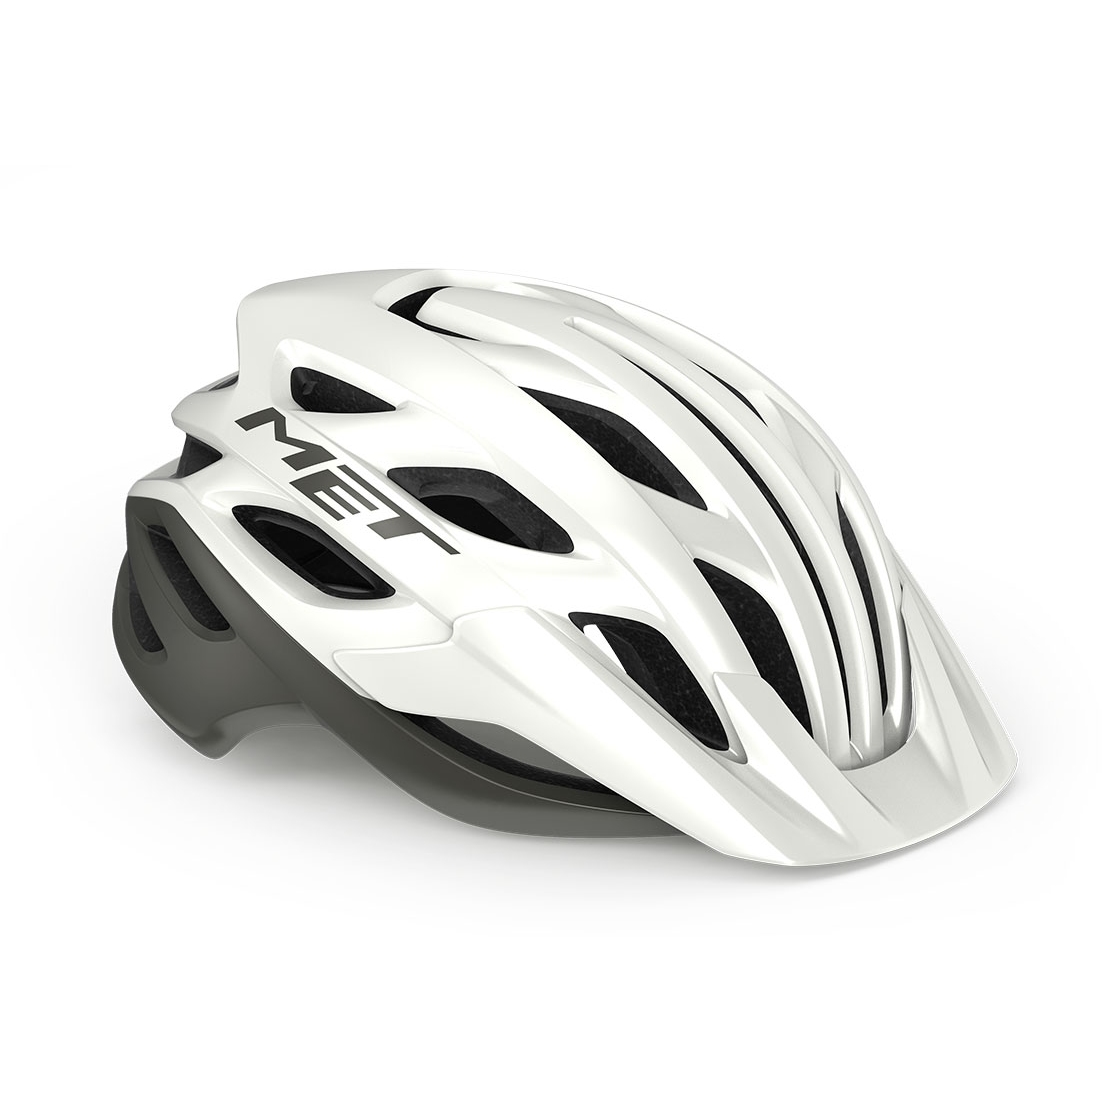 Productfoto van MET Veleno MIPS Helmet - white/gray matt